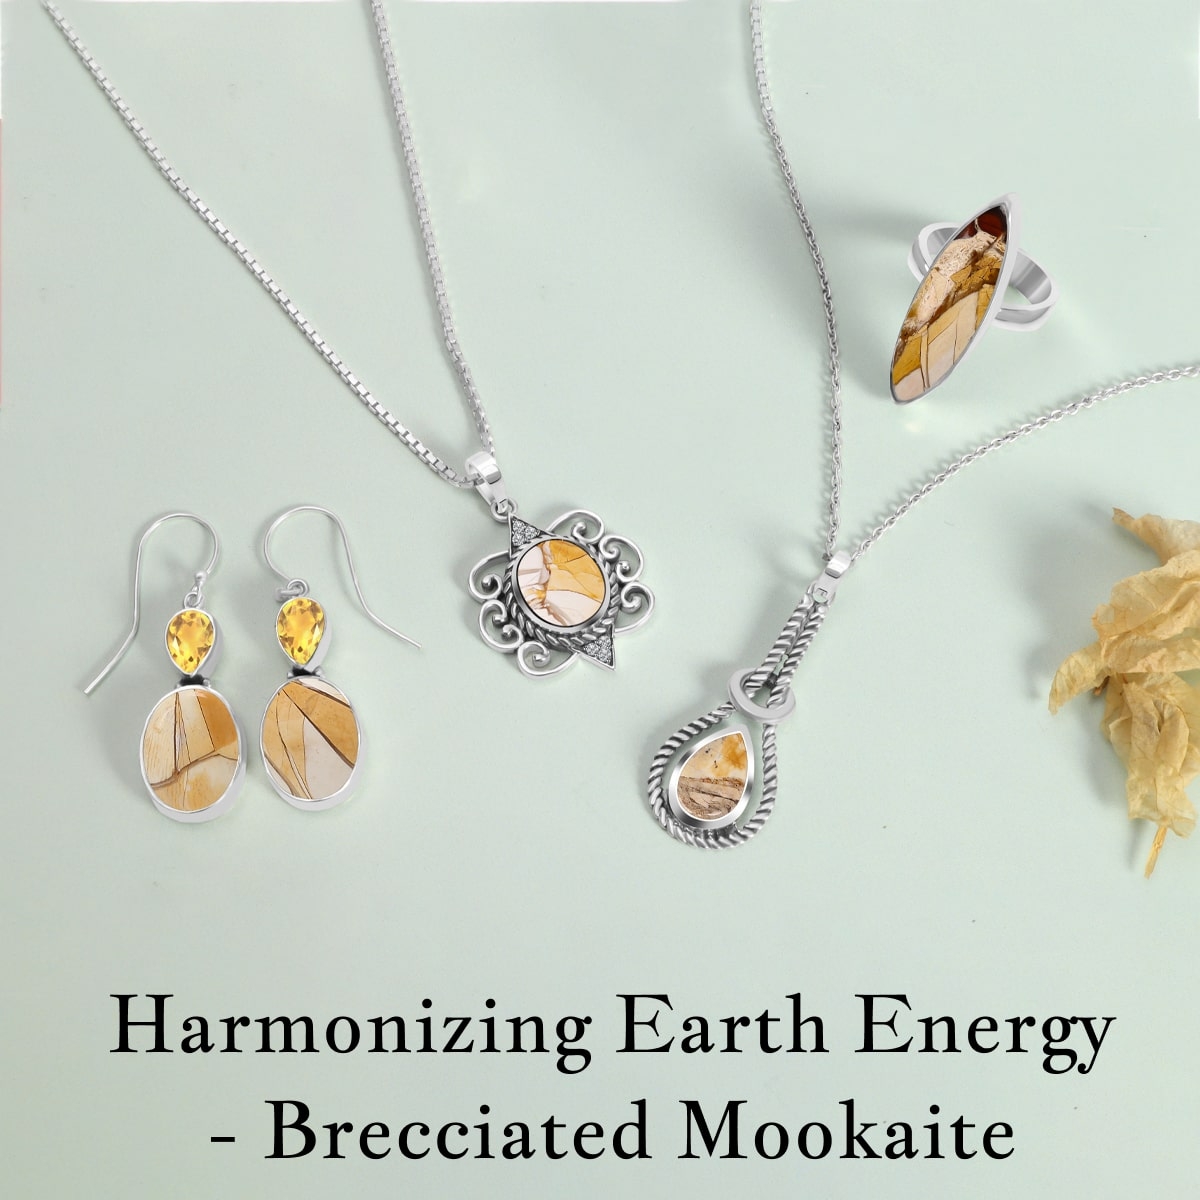 Brecciated Mookaite Healing Properties